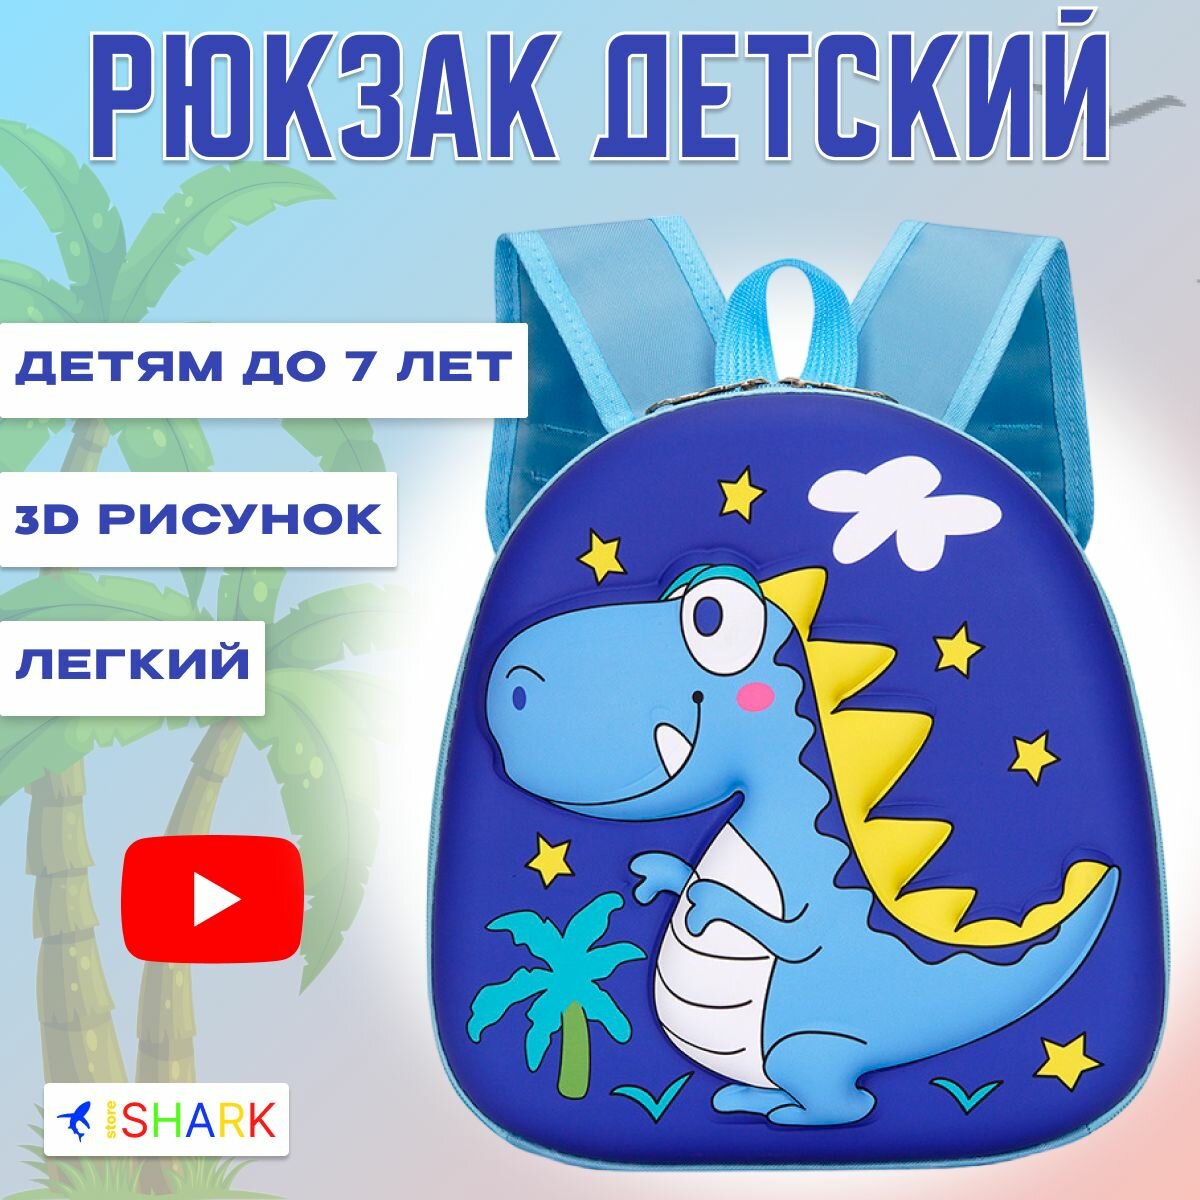 Рюкзак детский маленький дошкольный для мальчиков с динозавром в садик, цвет синий